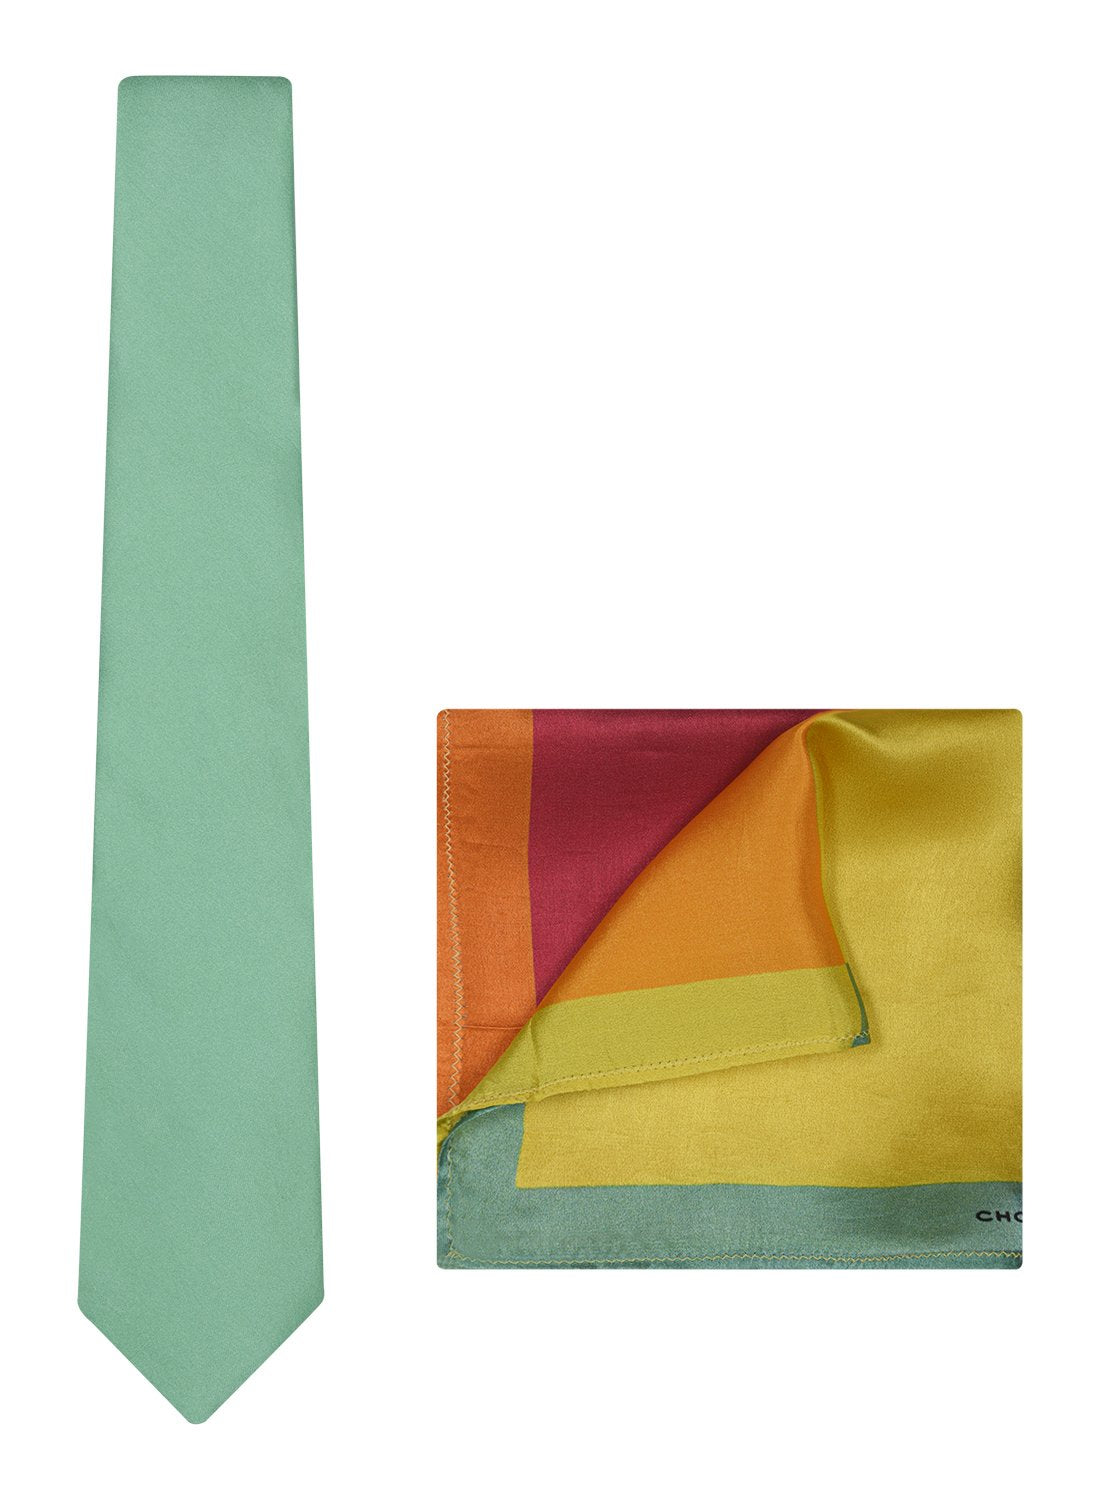 Chokore Sea Green color Silk Tie & Four-in-one Multicolor Silk Pocket Square set